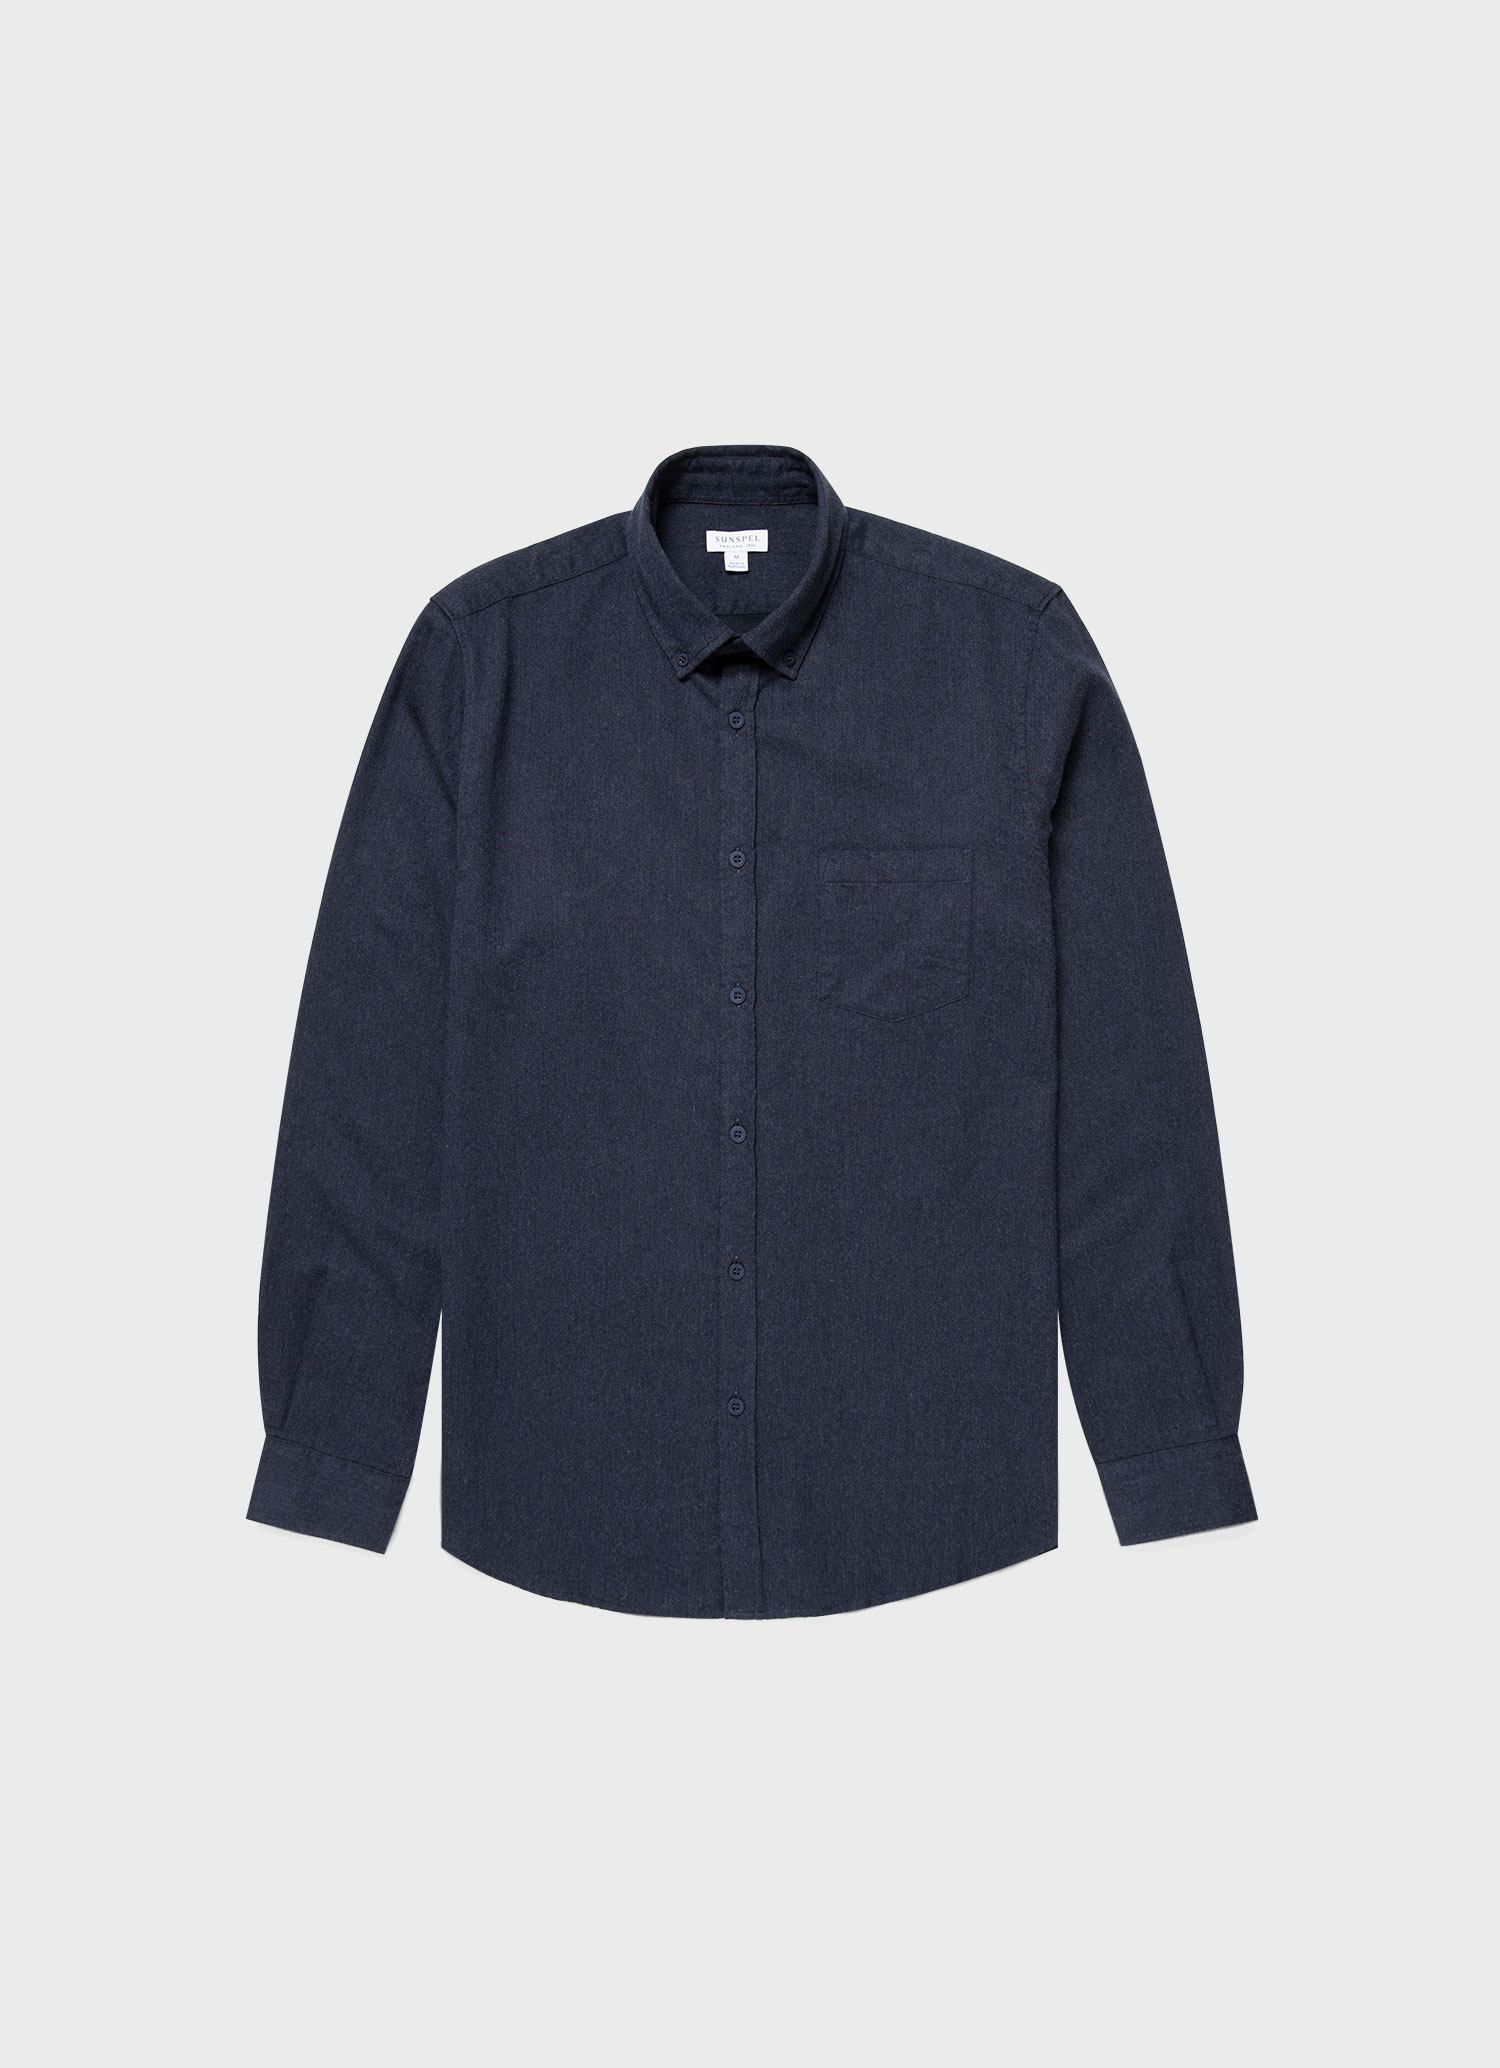 Men's Button Down Flannel Shirt in Navy Melange